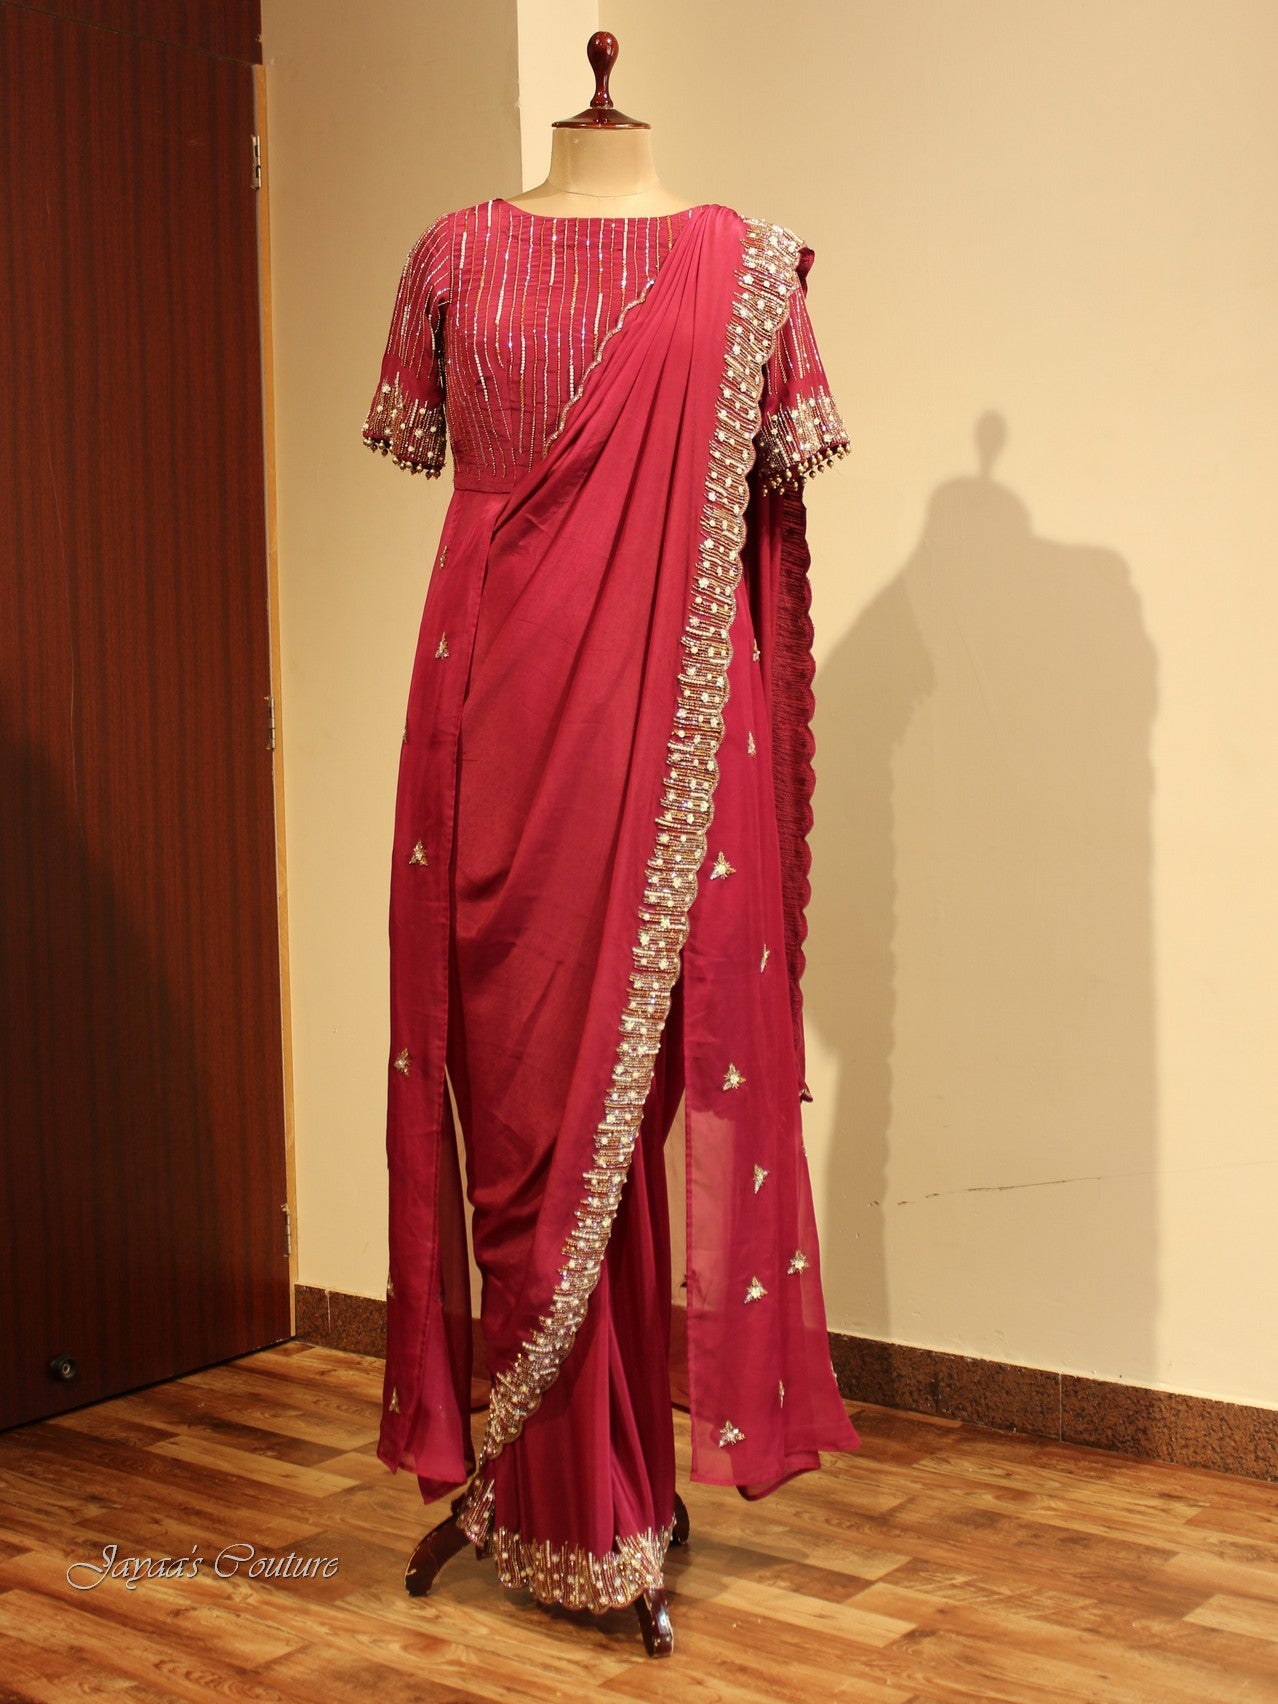 Maroon drape saree with shrug